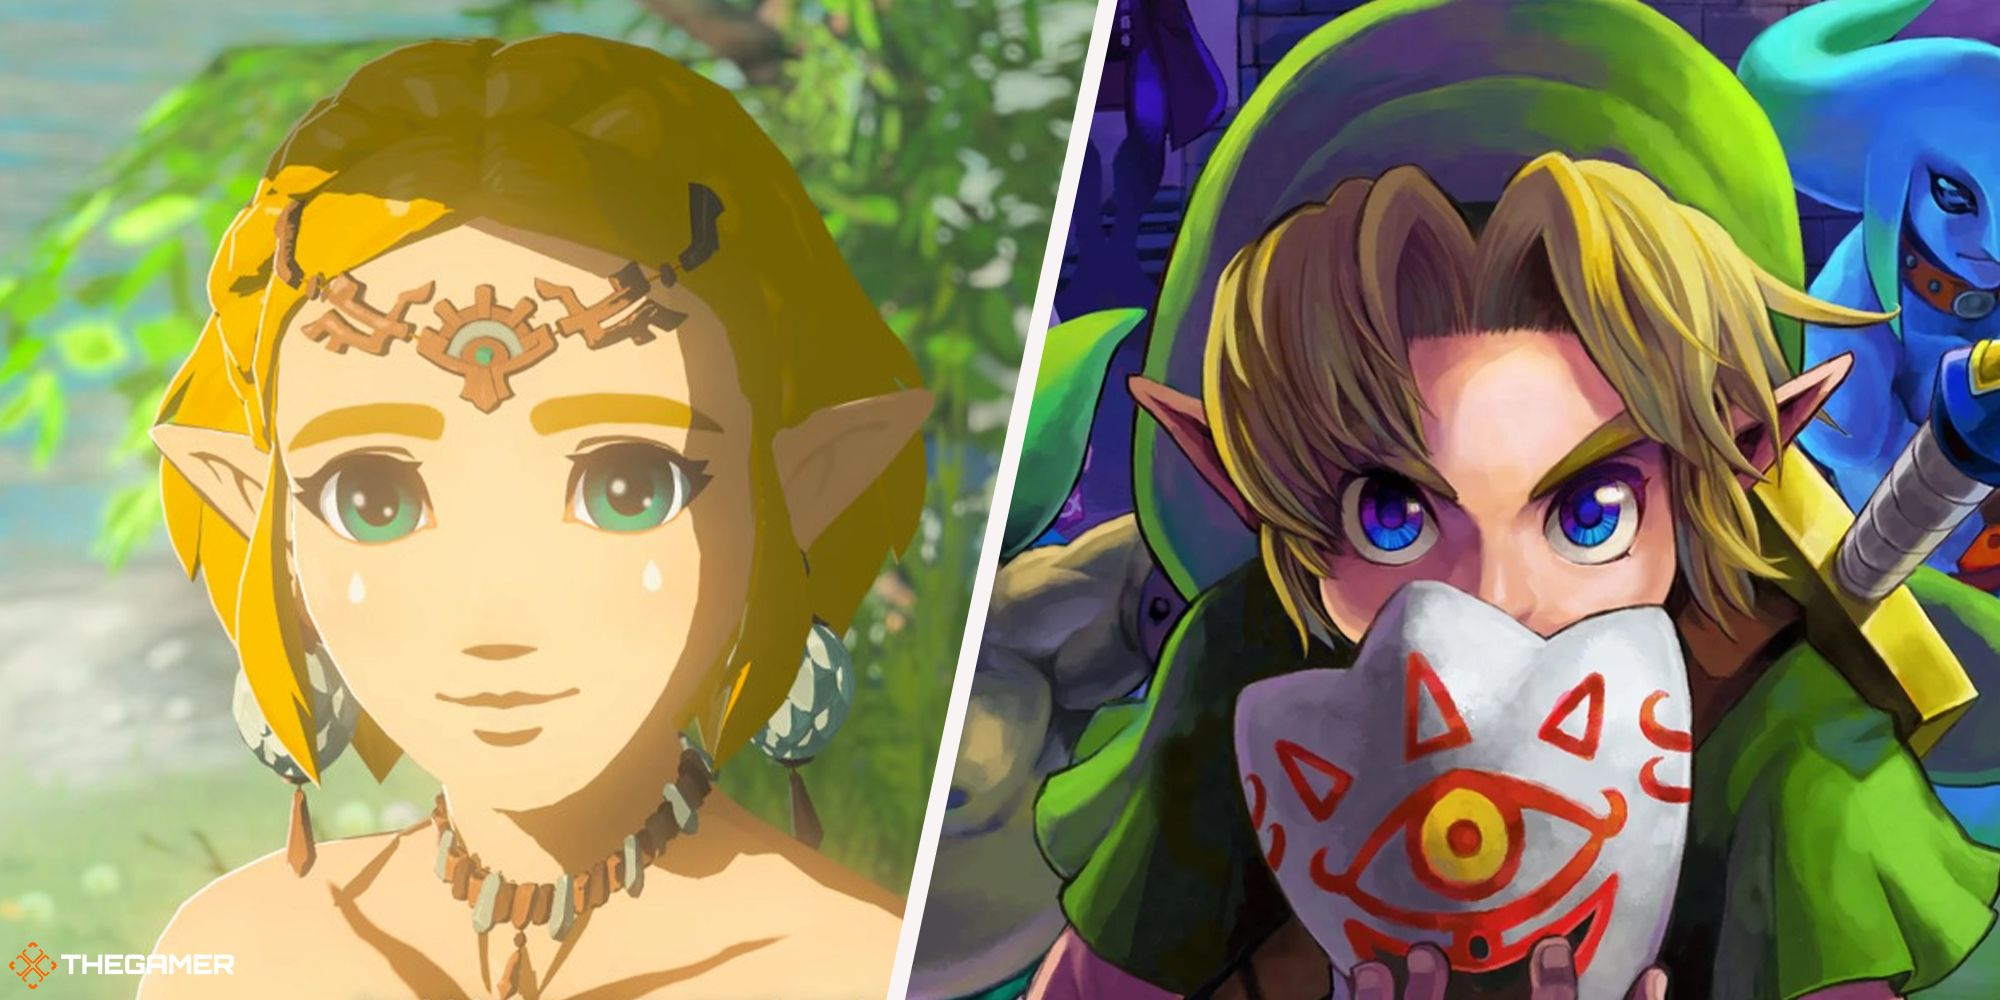 The Zelda Series Ranked – Heroes of Play